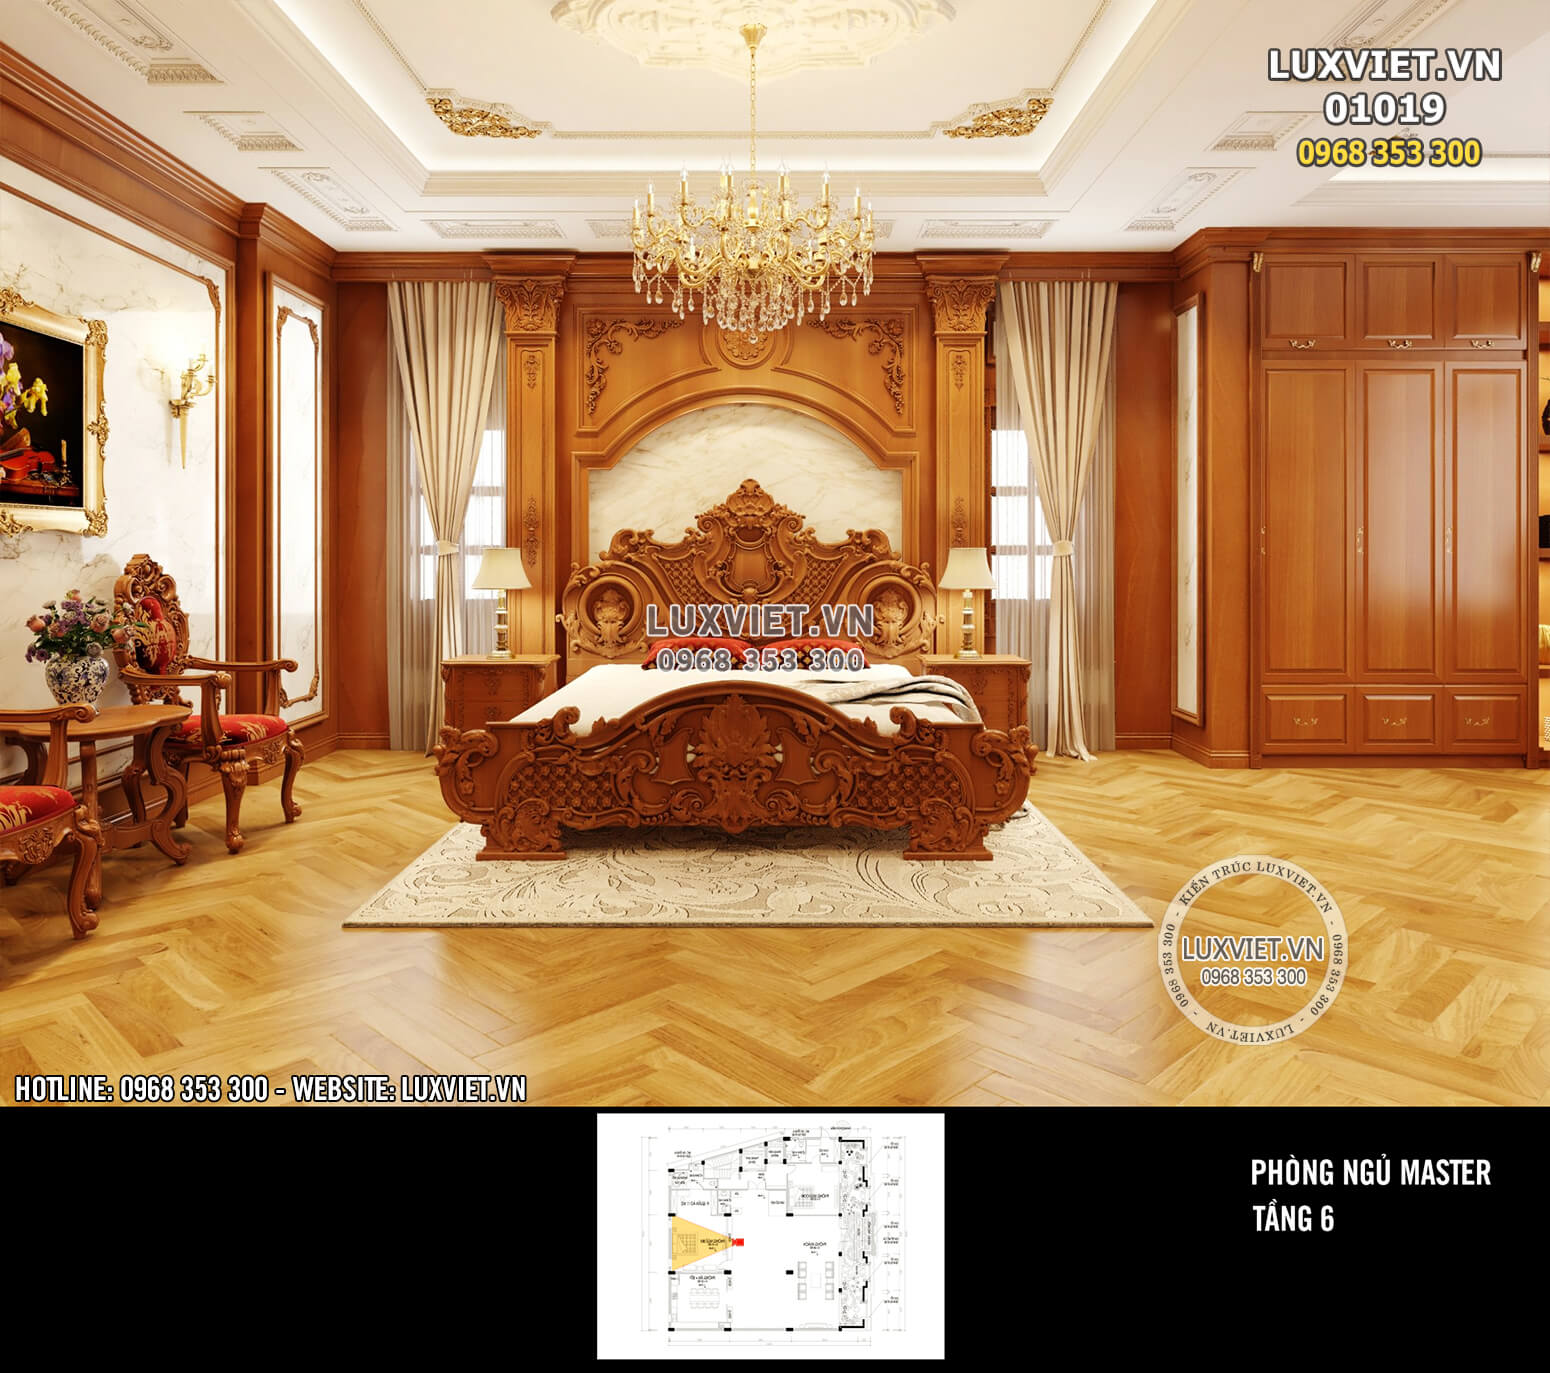 Hình ảnh: Thiết kế nội thất phòng ngủ tân cổ điển - LV 01019